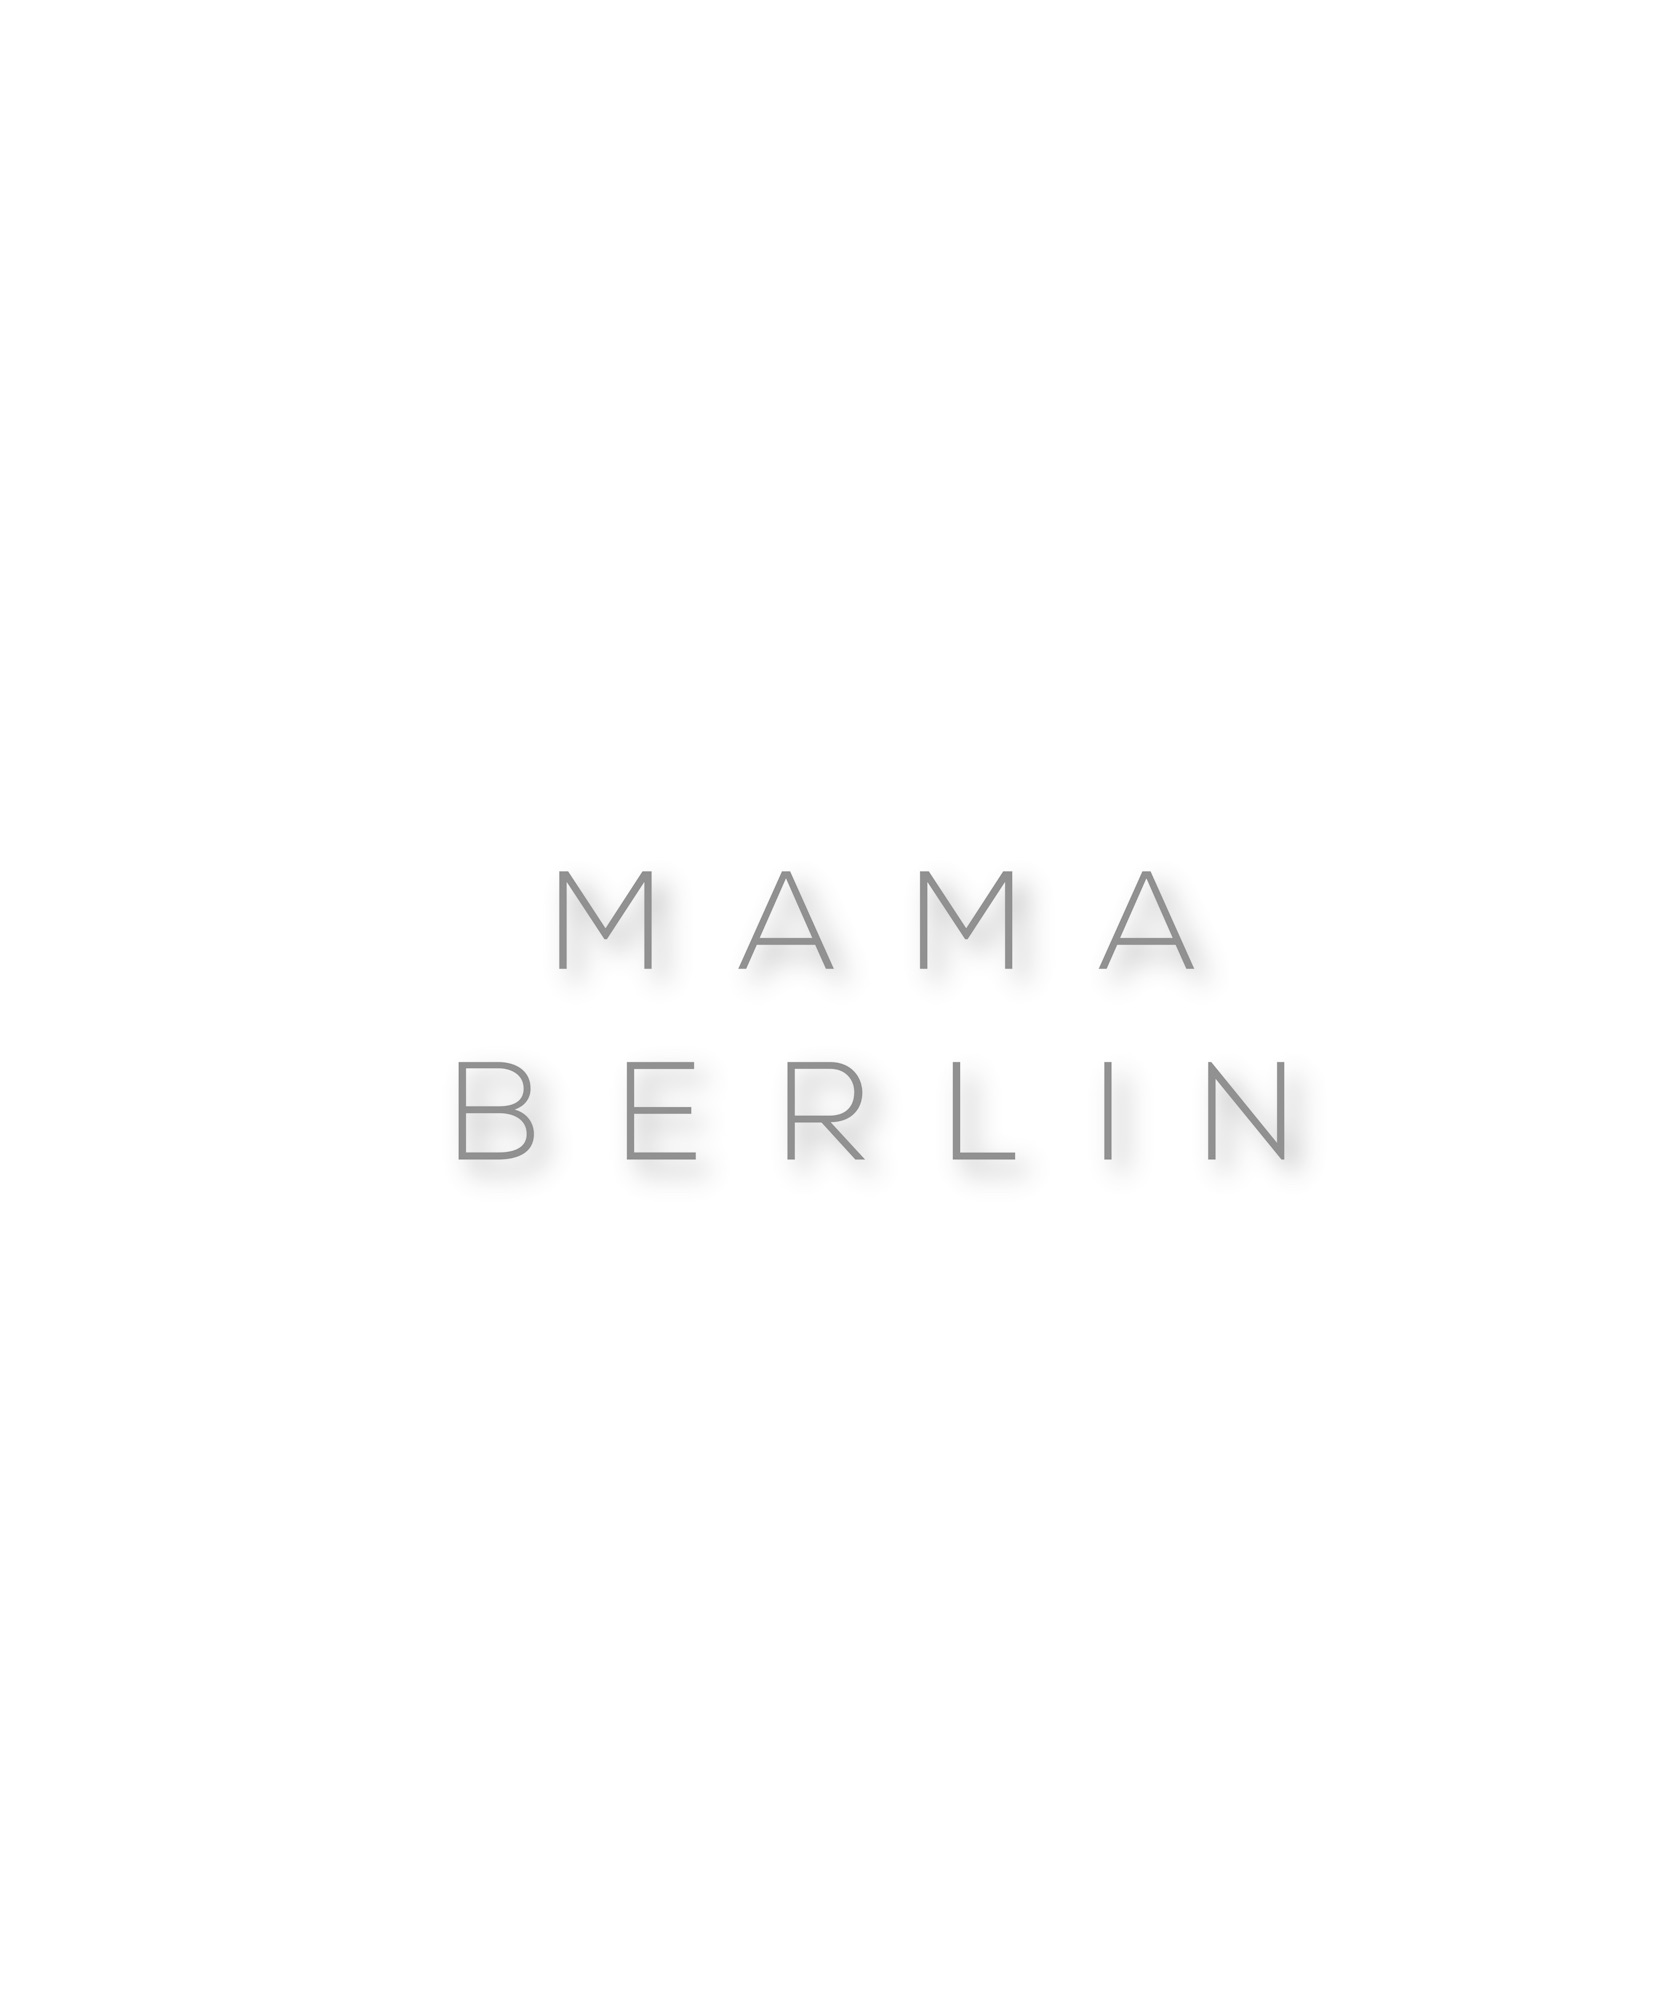 MAMA BERLIN